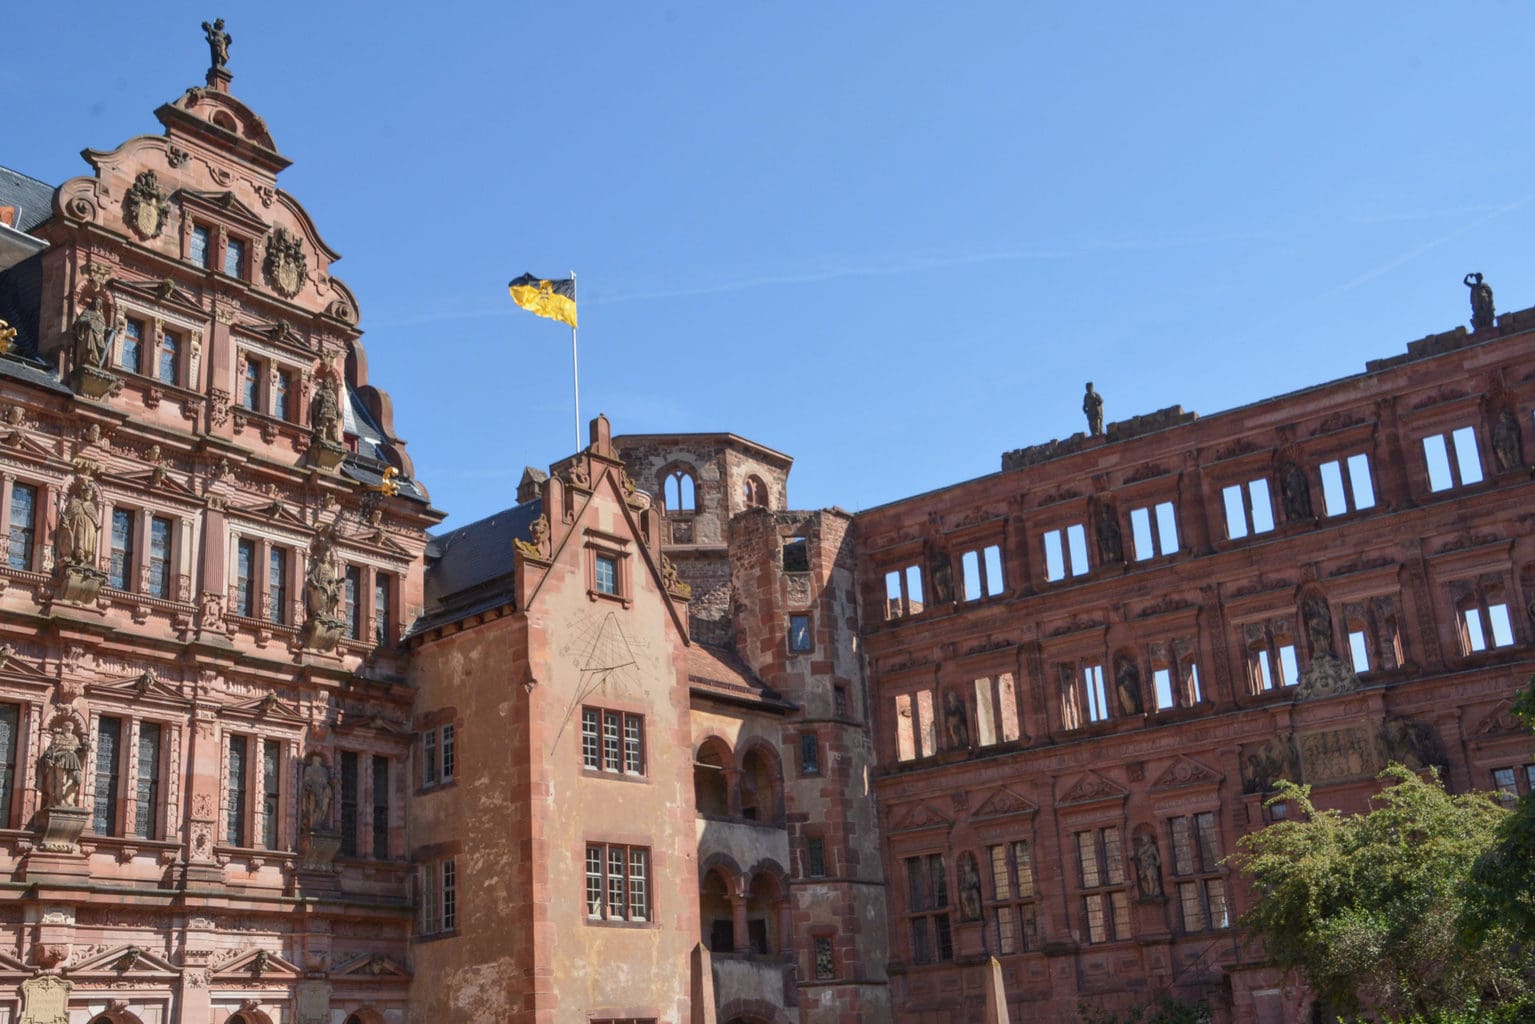 De Kasteelzuine van Heidelberg met een vlag can de Duitse deelstaat Baden-Wuerttemberg in de wind